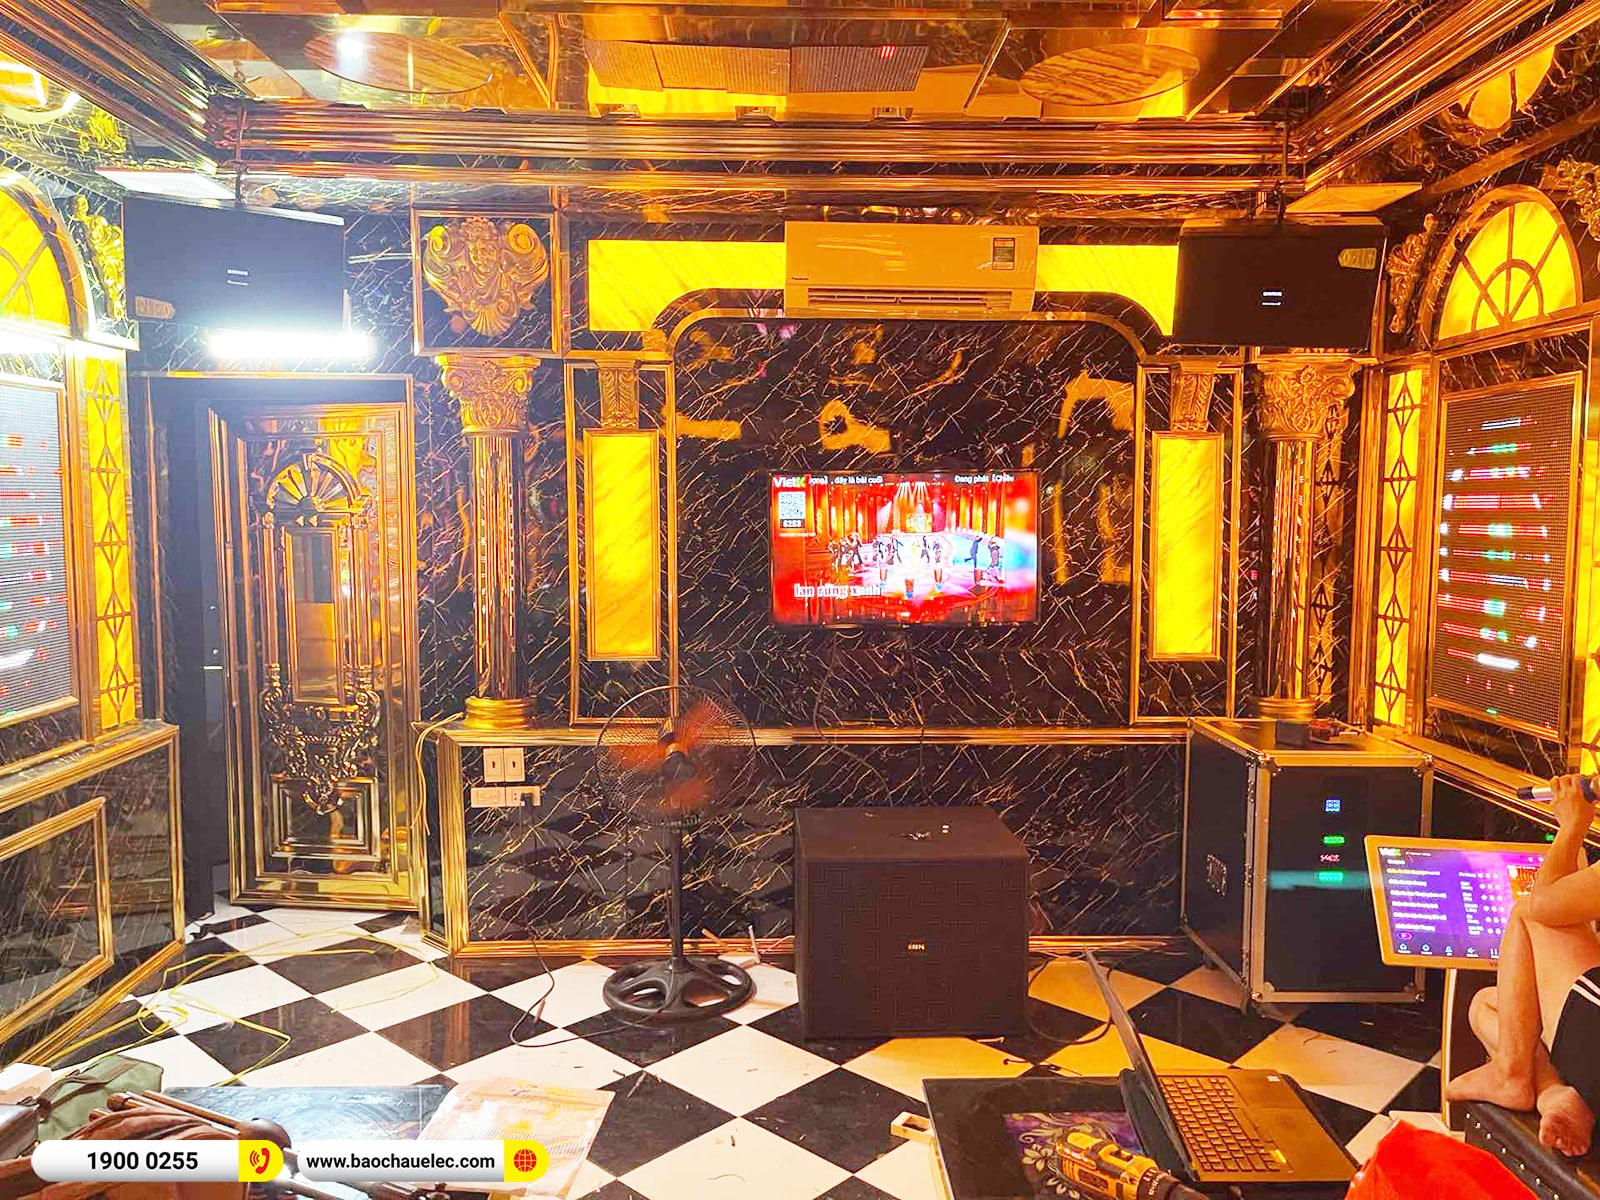 Lắp đặt phòng hát kinh doanh gần 120tr cho karaoke Suối Nhạc tại Hà Nội